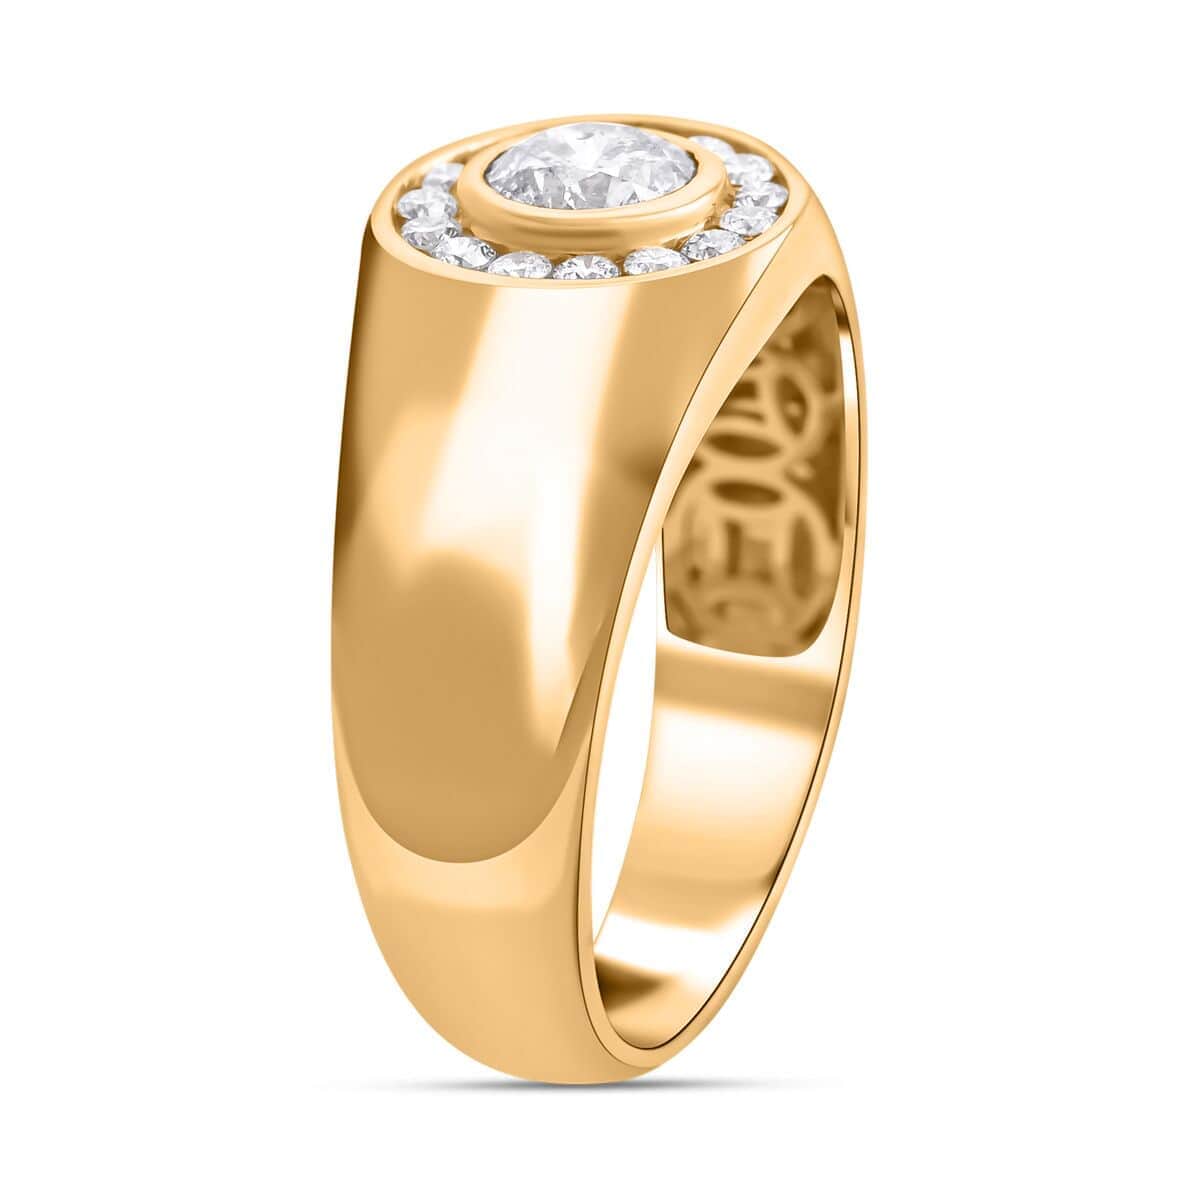 Modani 14K Yellow Gold Diamond Men's Ring (Size 10.0) 6.70 Grams 1.10 ctw image number 3